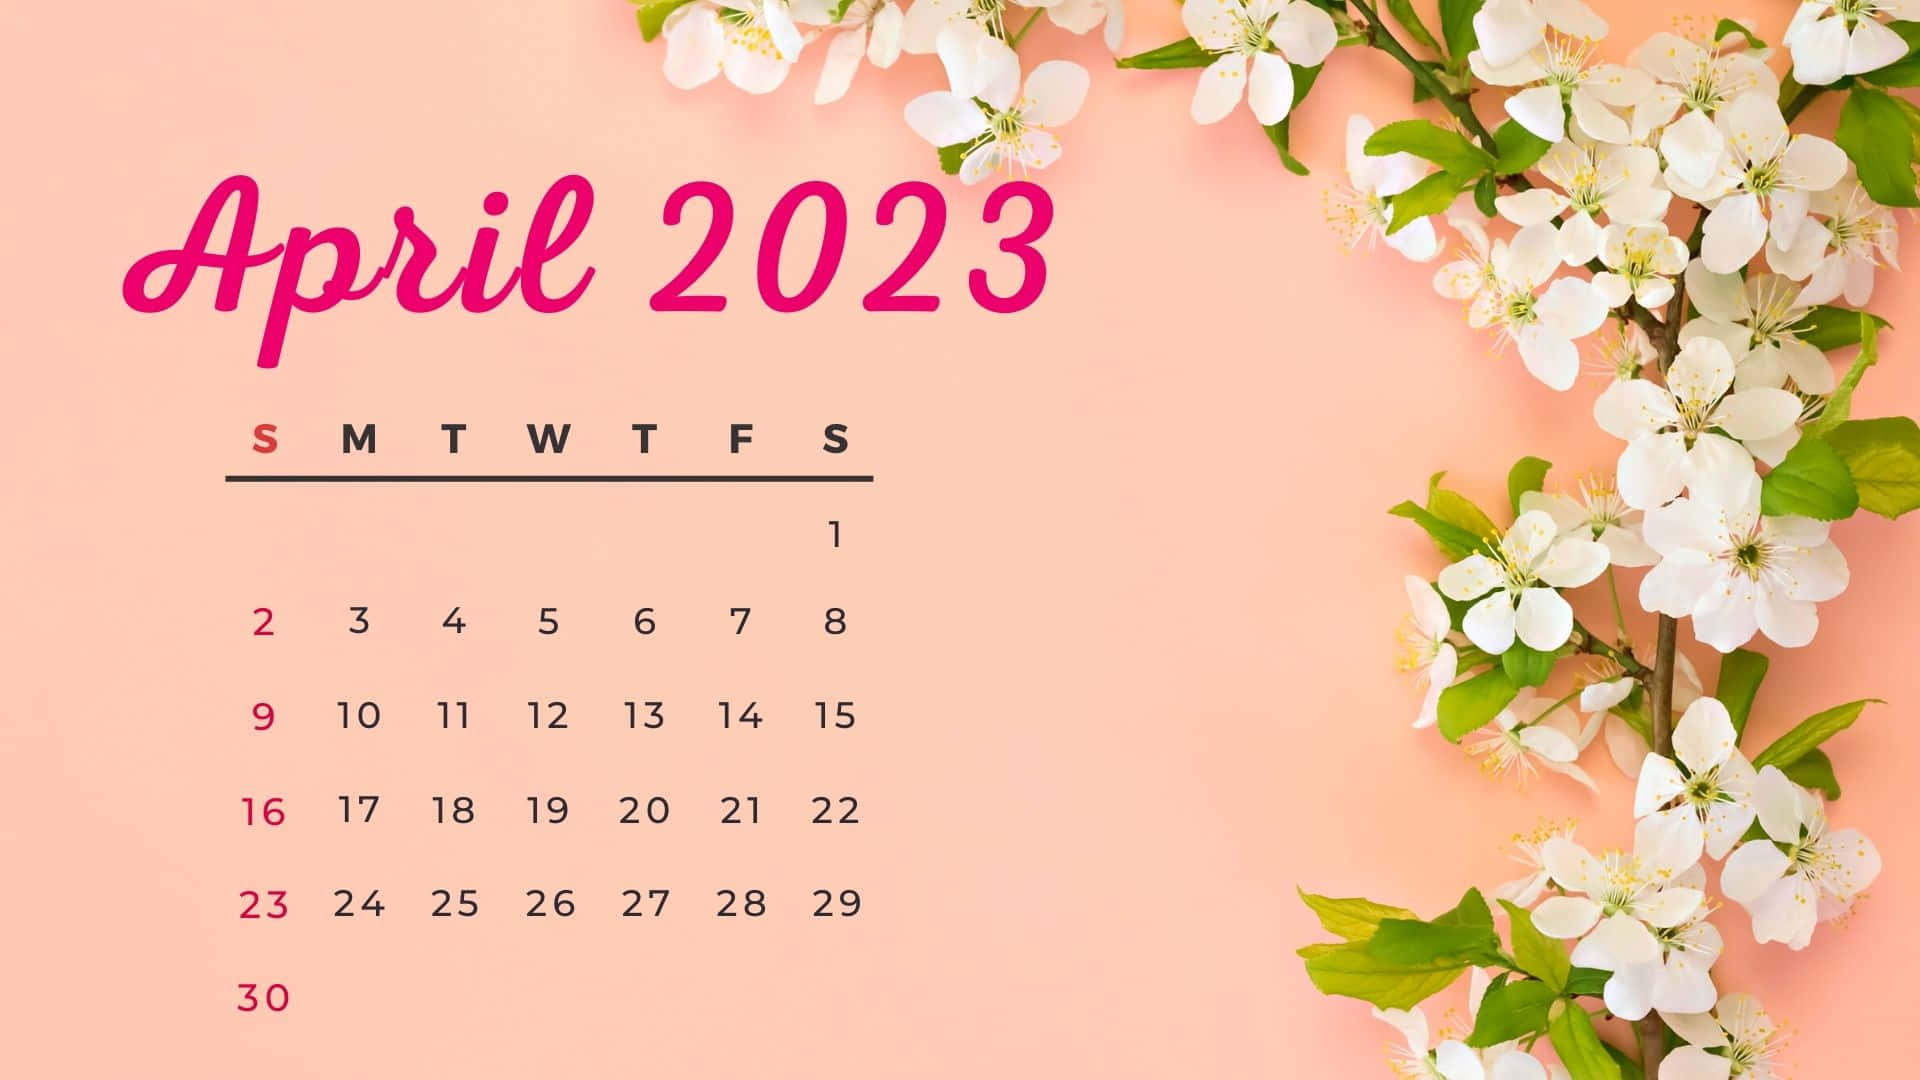 April 2023 Calendar Backgrounds For Desktop  PixelsTalkNet